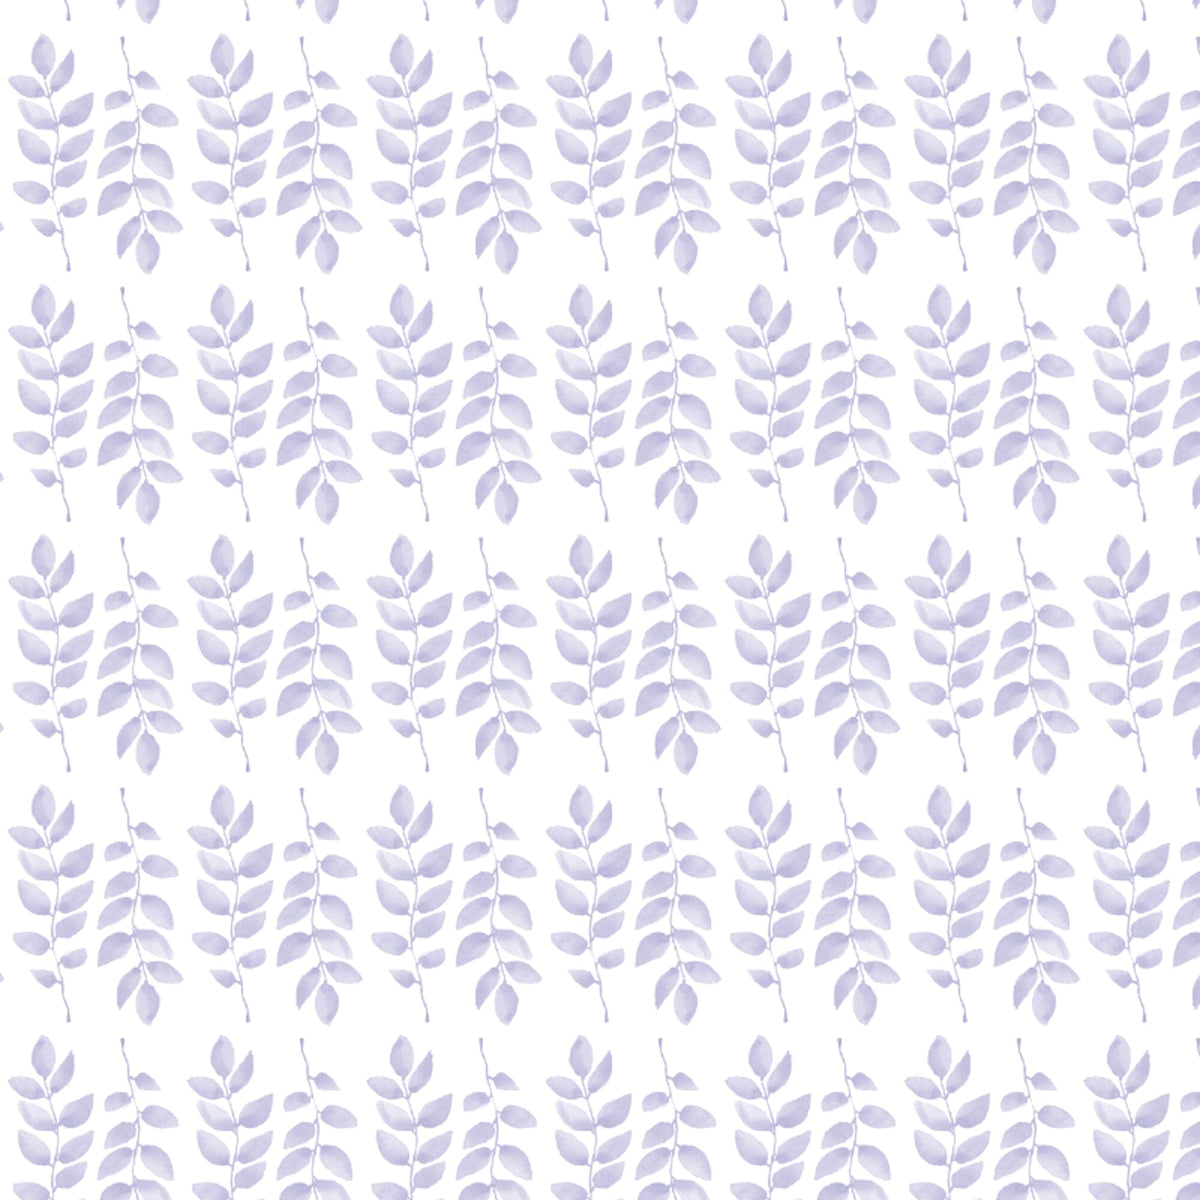 Duvet - Foliage Lavender Bedding, Duvets MWW 